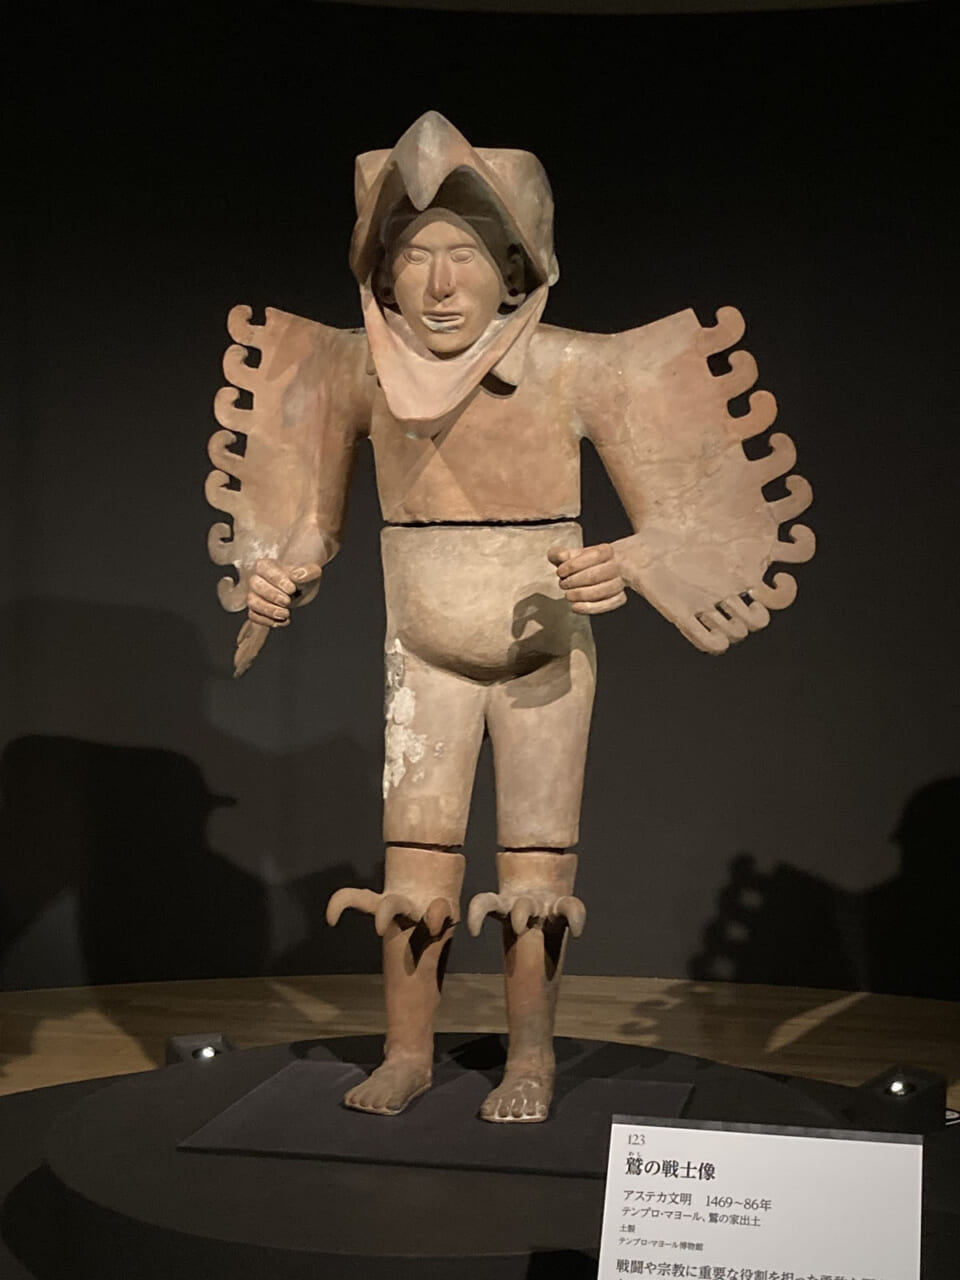 アステカ マヤ文明 土偶 戦士の像 プリミティブアート 彩文土偶 - 貨幣